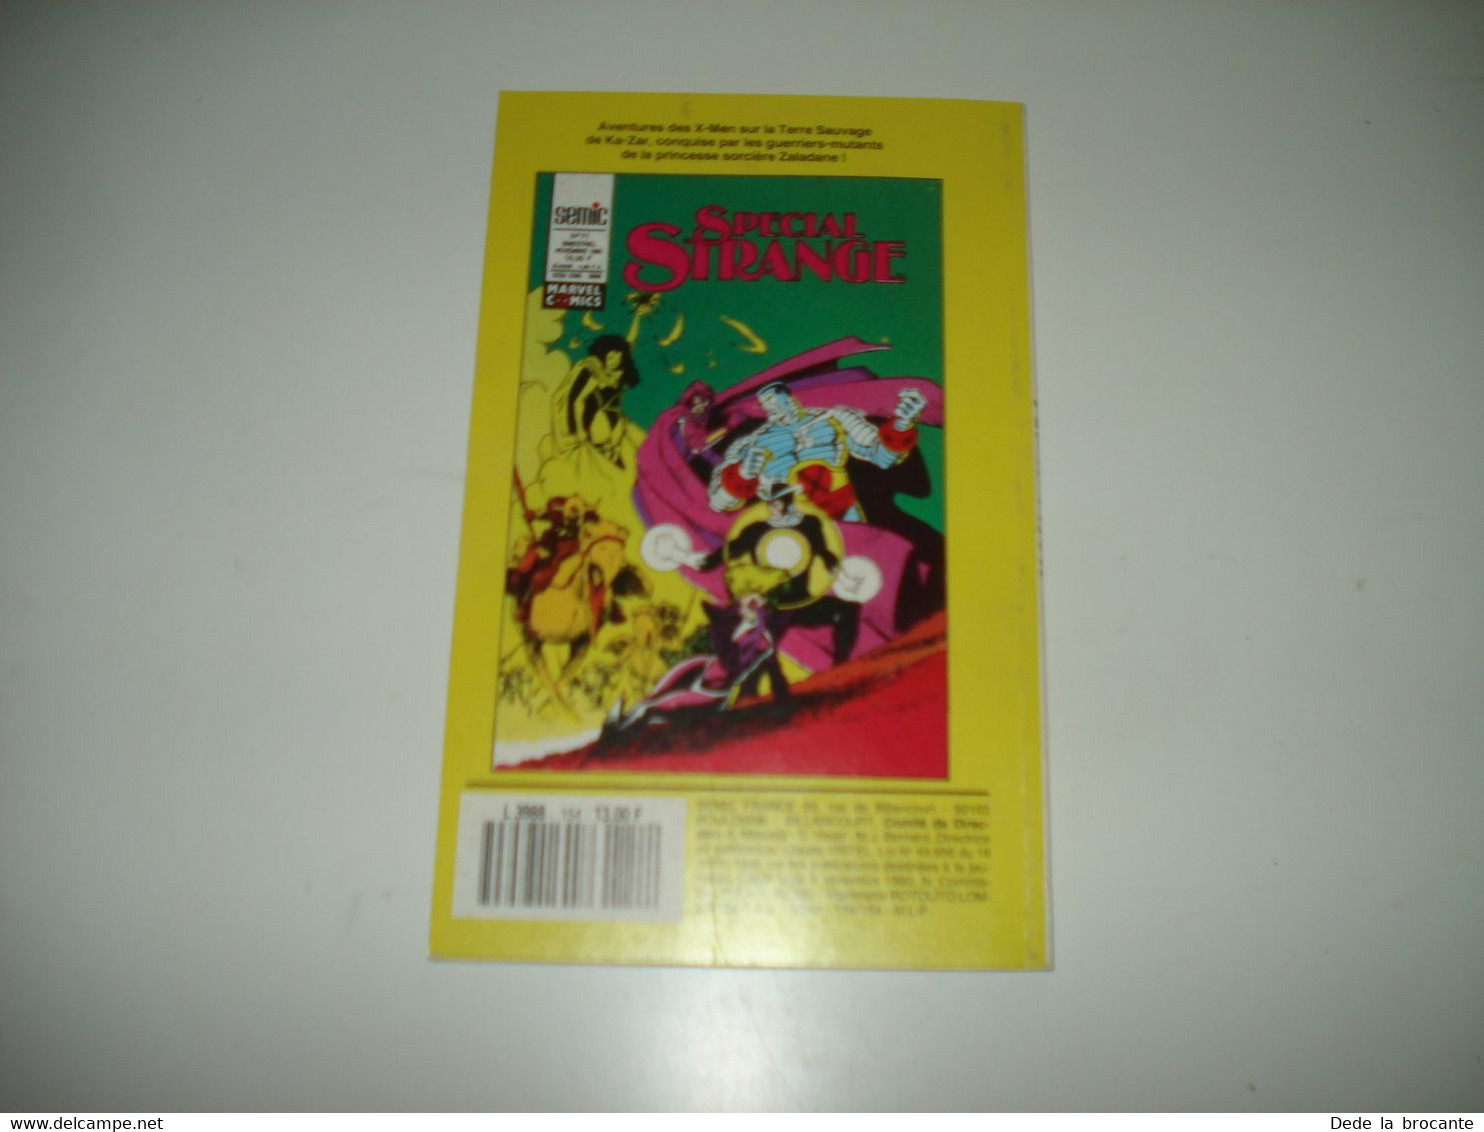 C22 / Marvel Comics  NOVA  N° 154  SEMIC éditions - Novembre  1990 -  Comme Neuf - Nova